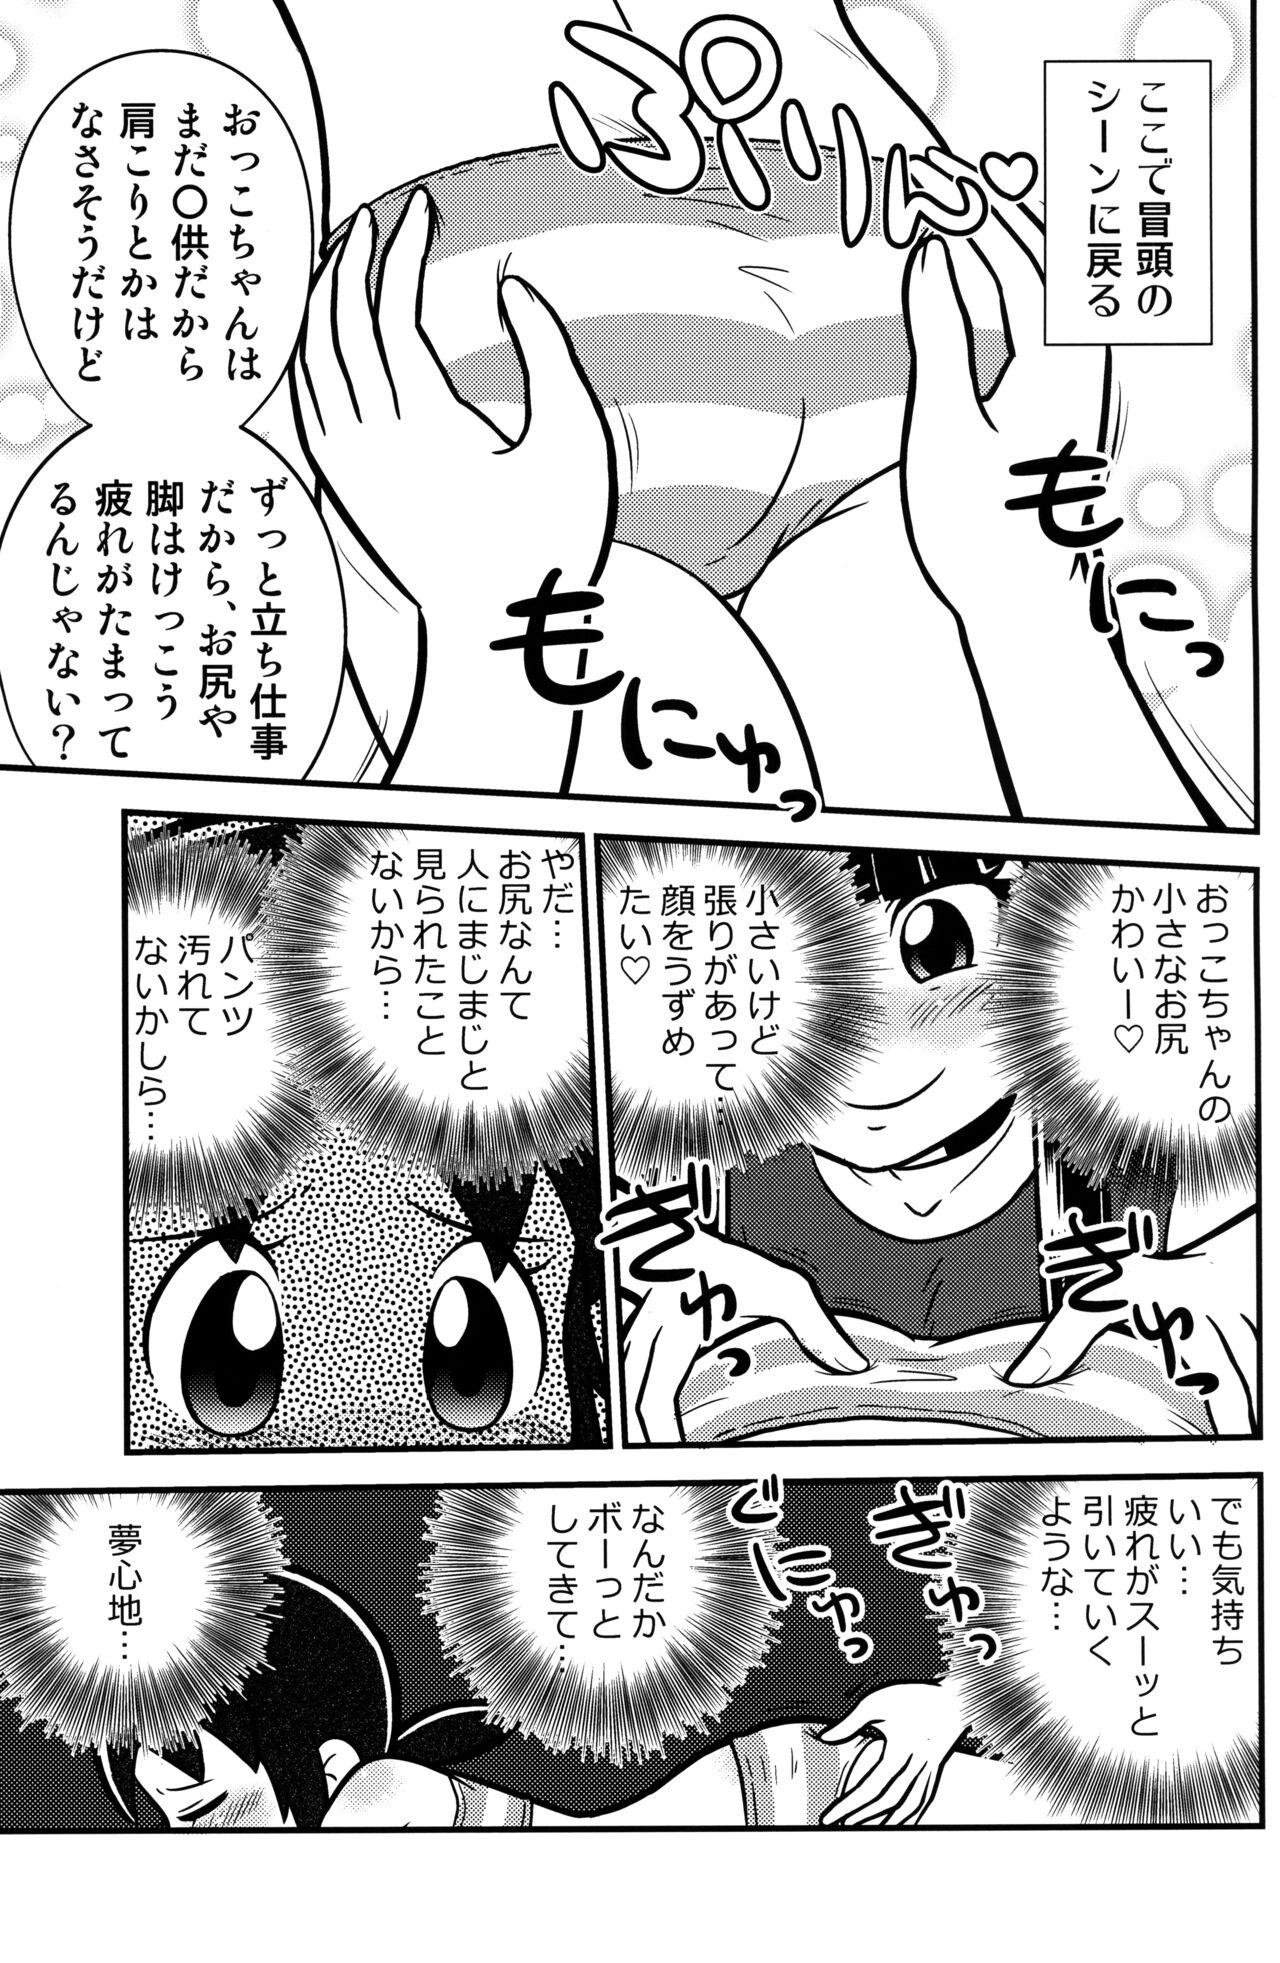 Pervs Senkakubanrai! 2 - Waka okami wa shougakusei Free Teenage Porn - Page 7